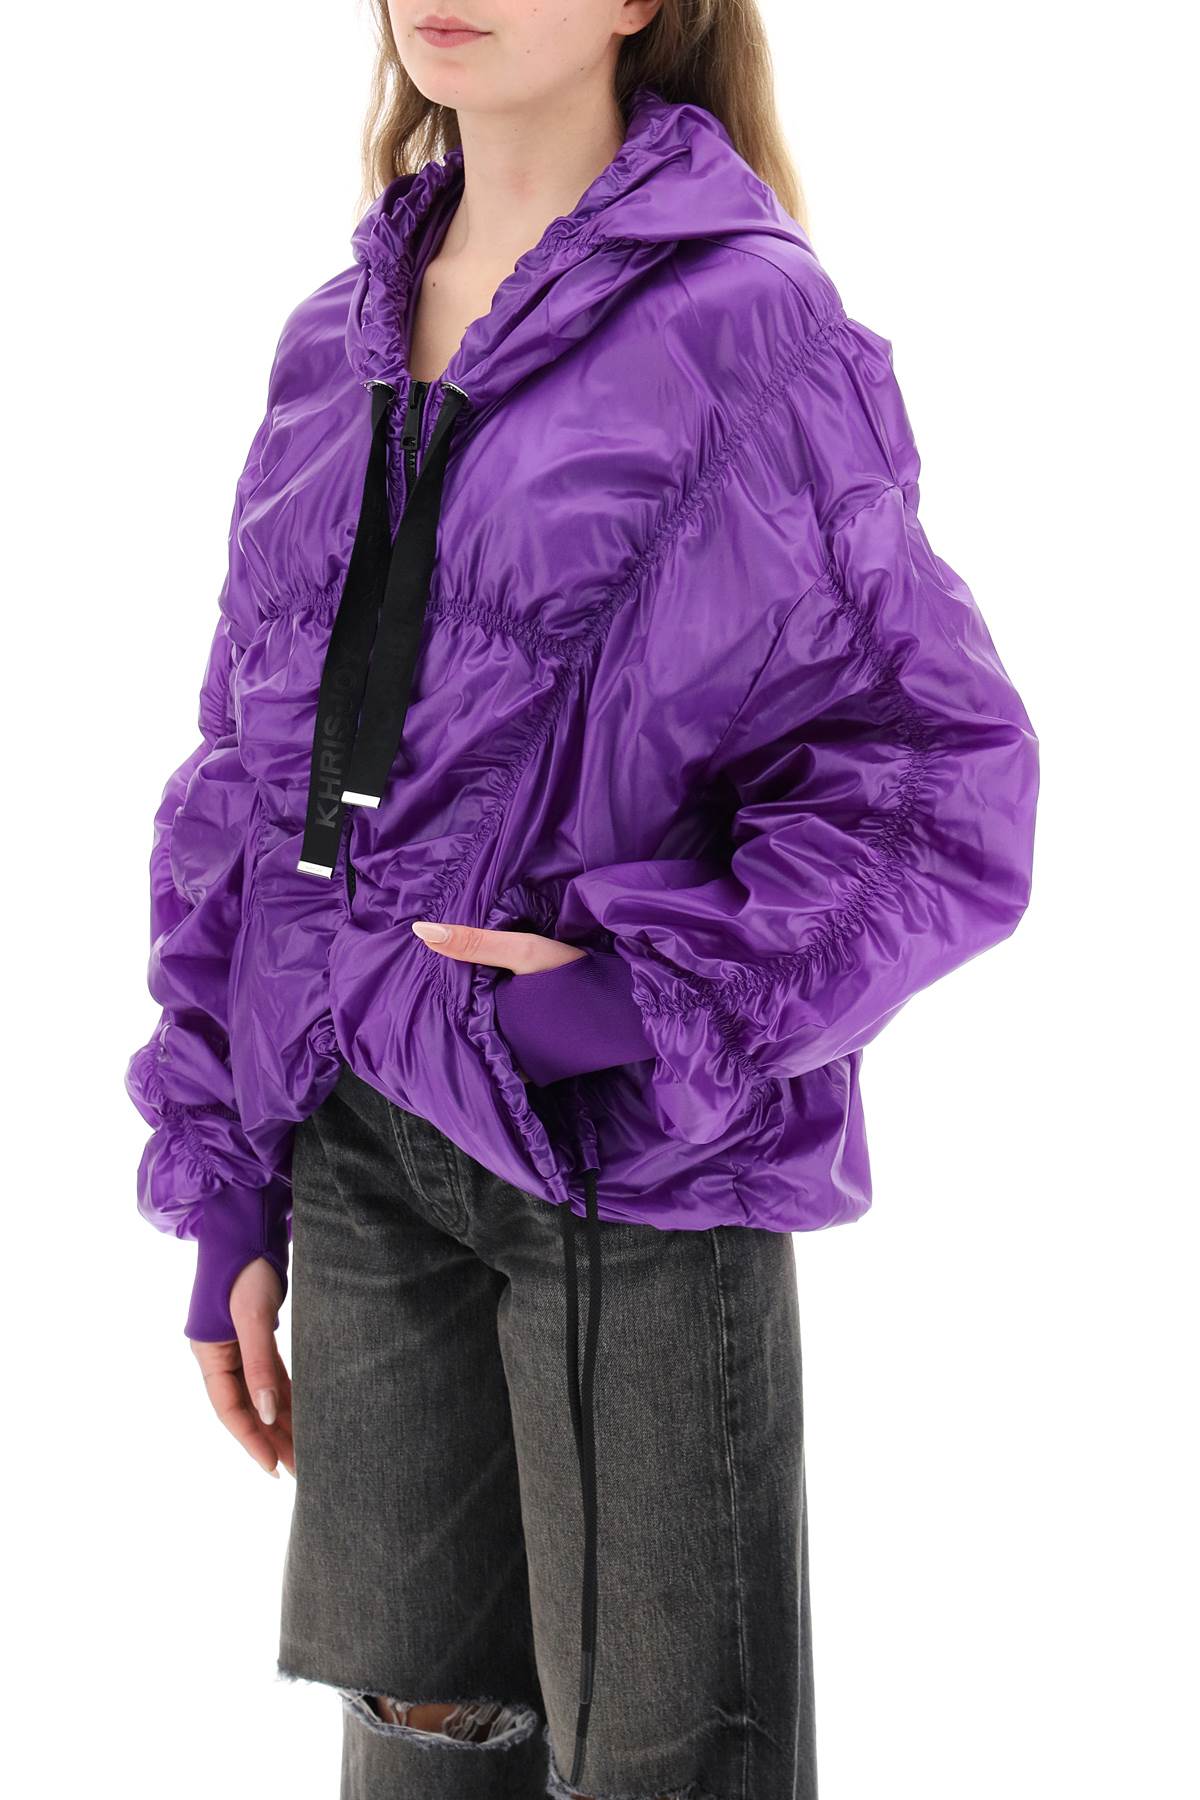 Khrisjoy 'cloud' light windbreaker jacket-3